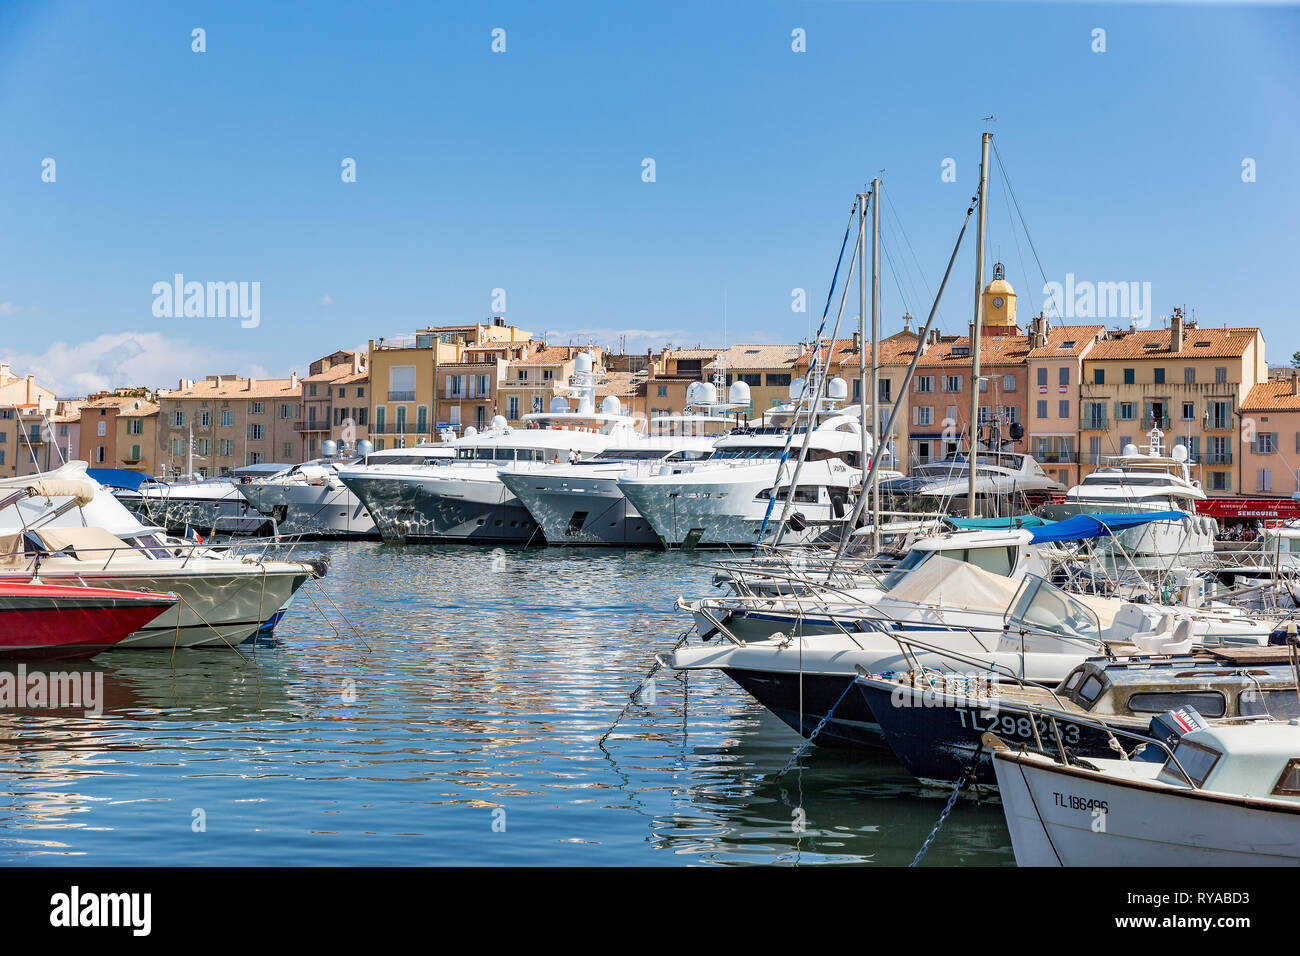 Yachten im Hafen Vor den historischen Gebaeuden a Saint Tropez, Frankreich, 01.09.2018 Bildnachweis: Mario Hommes / HH-fotografia Foto Stock